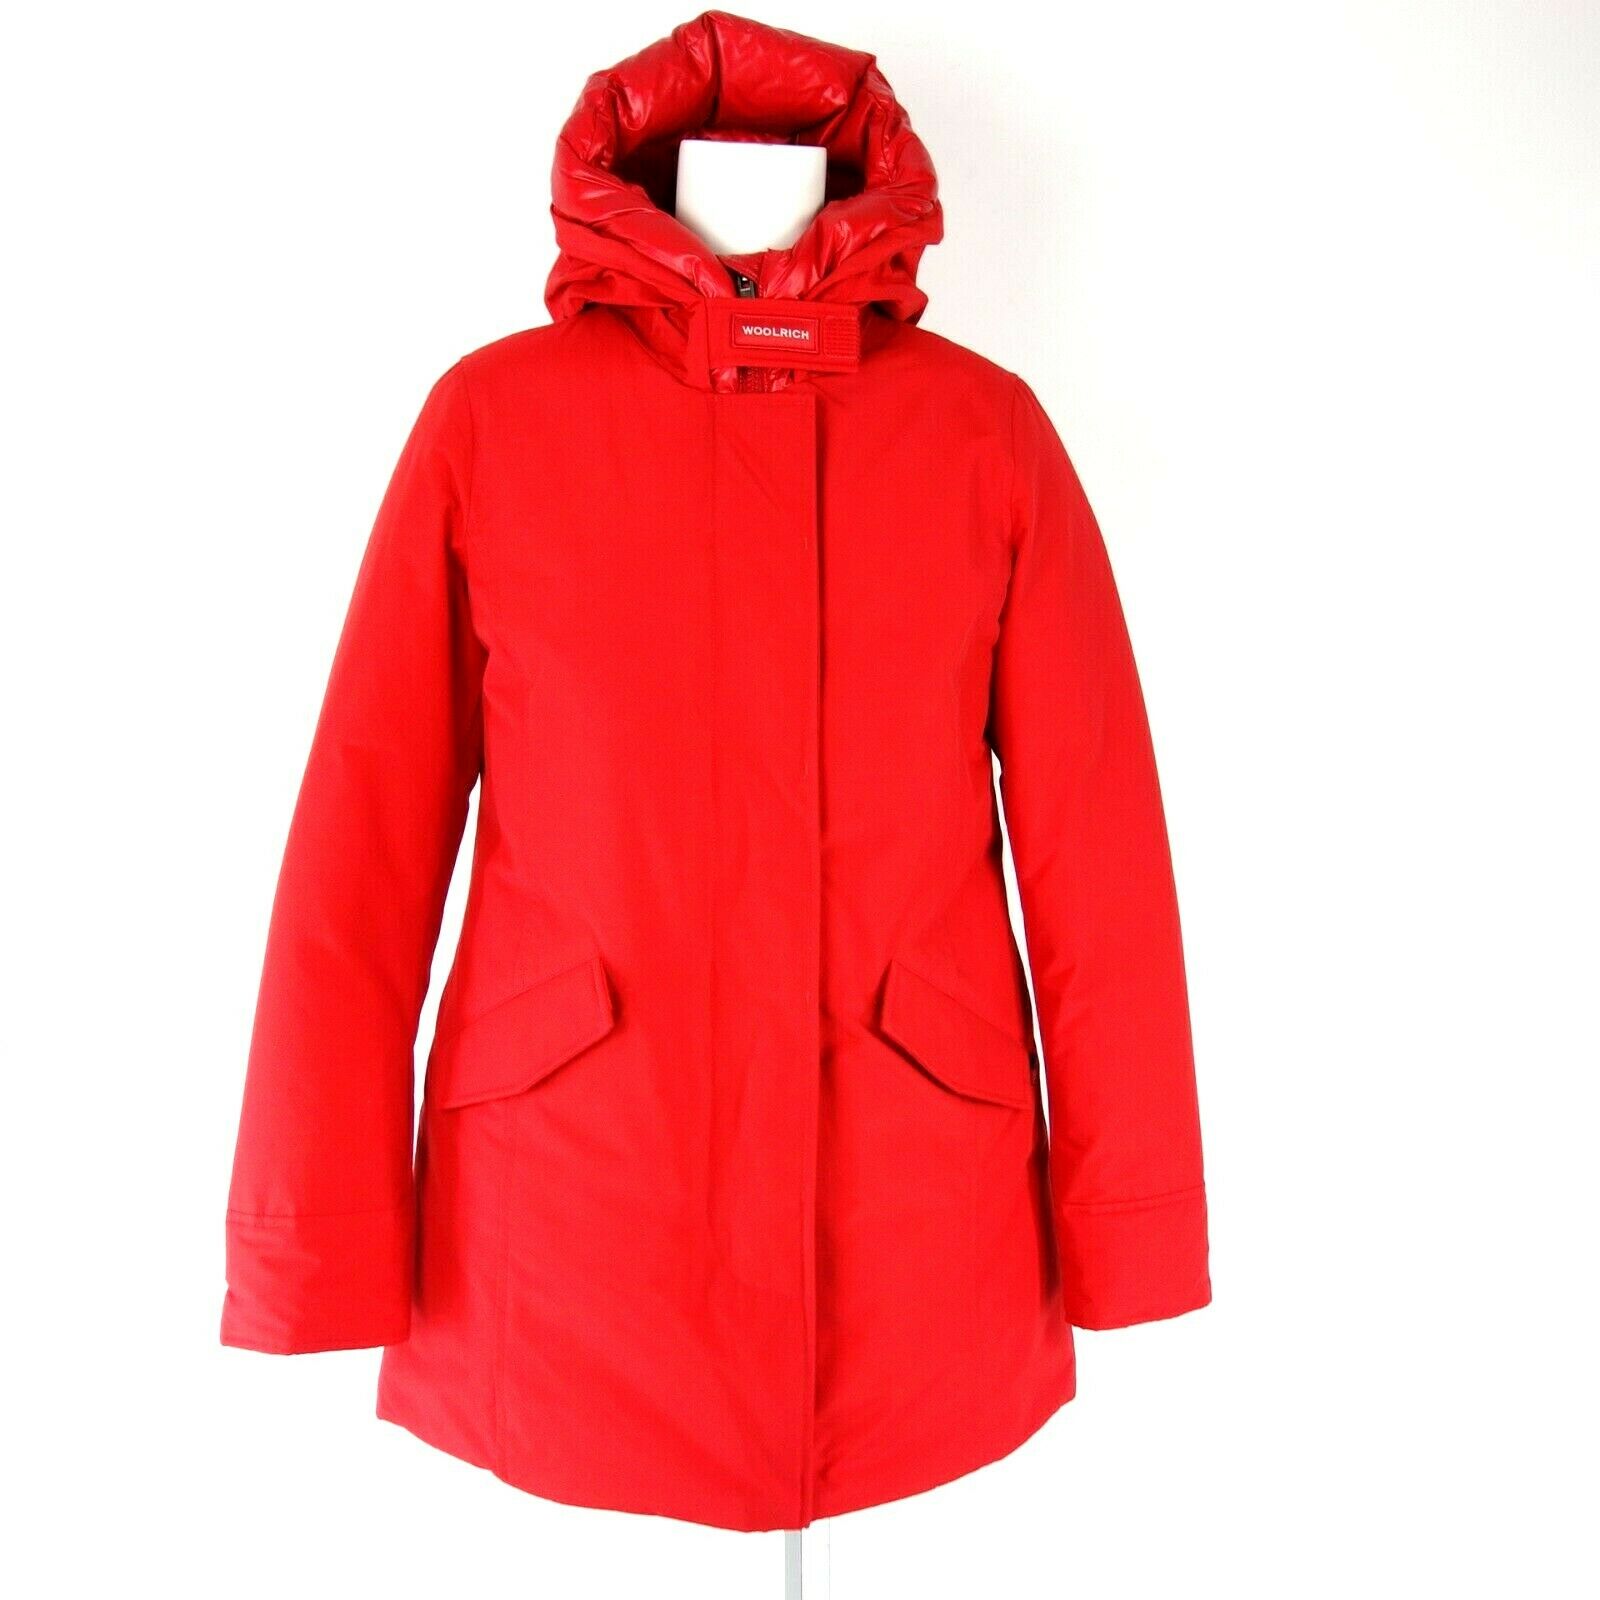 WOOLRICH Damen Winter Jacke Damenjacke ARCTIC PARKA Rot Größe S 36 Daunenjacke 